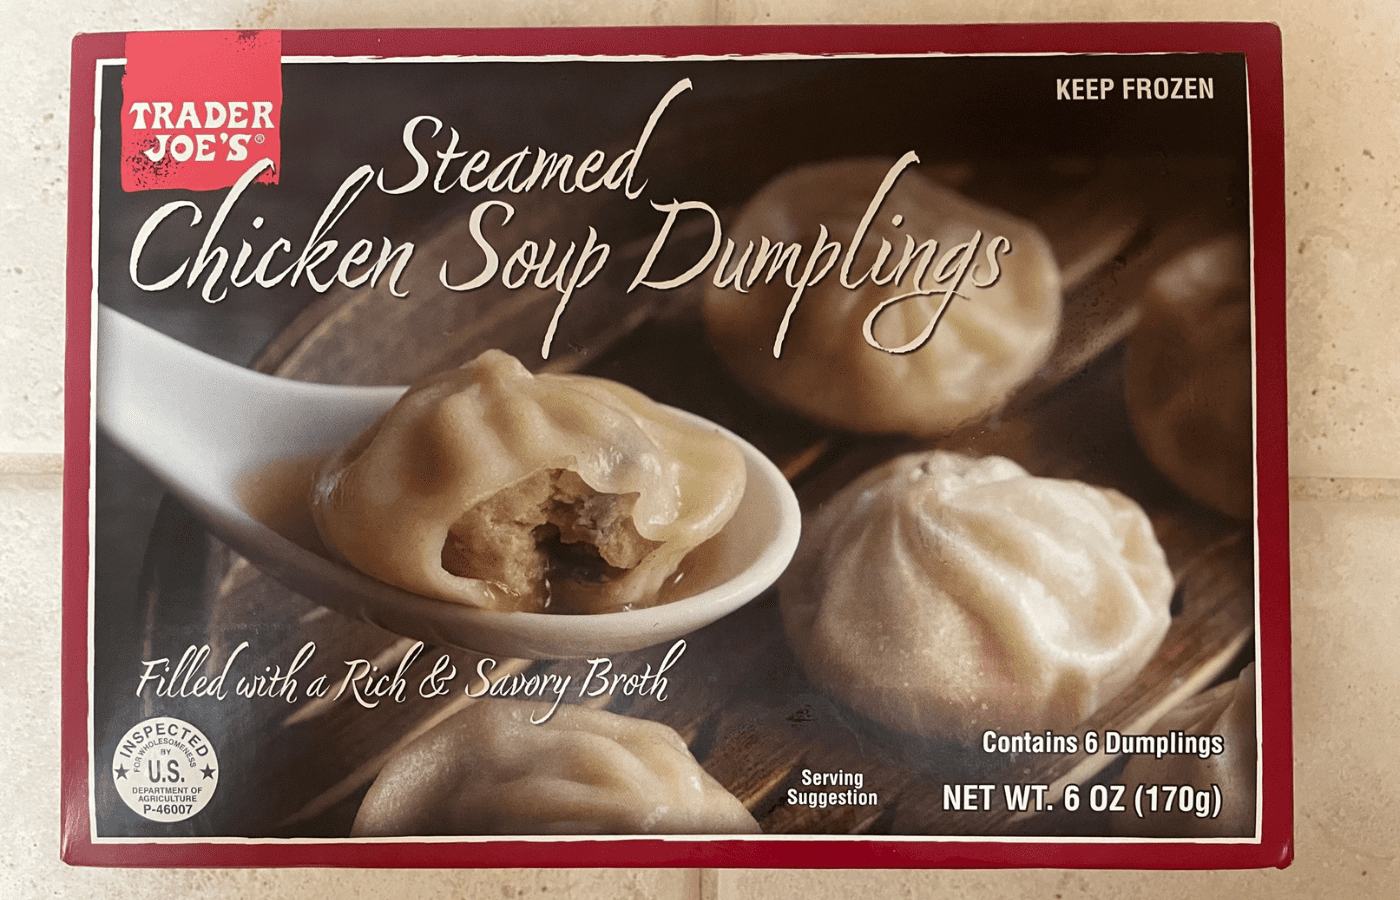 Trader Joe's Steamed Chicken Soup Dumplings - BecomeBetty.com